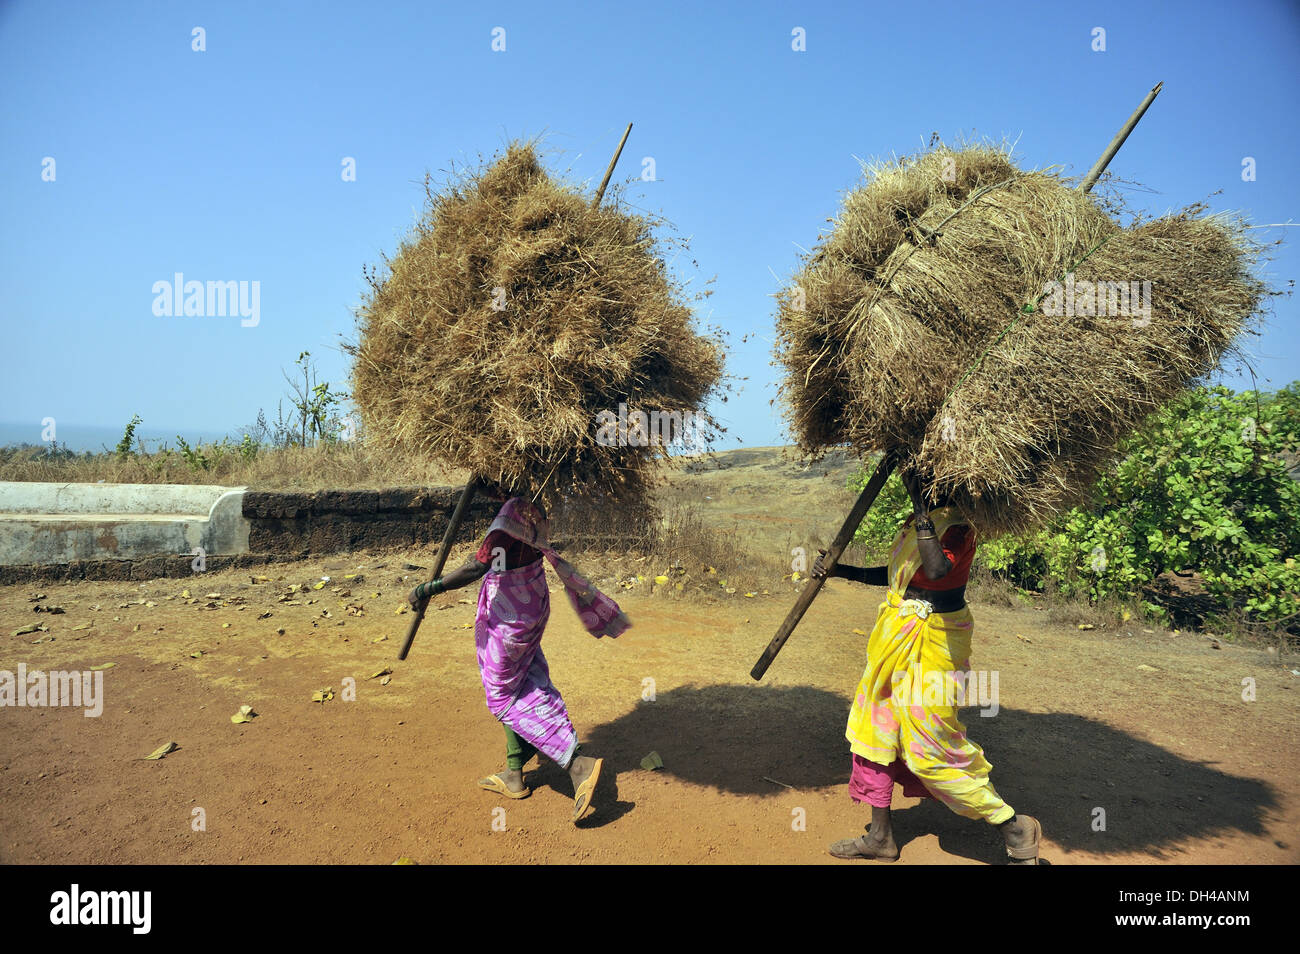 Deux Femme transportant de l'herbe sèche paquet à anjarla ratnagiri Maharashtra Inde Asie Banque D'Images